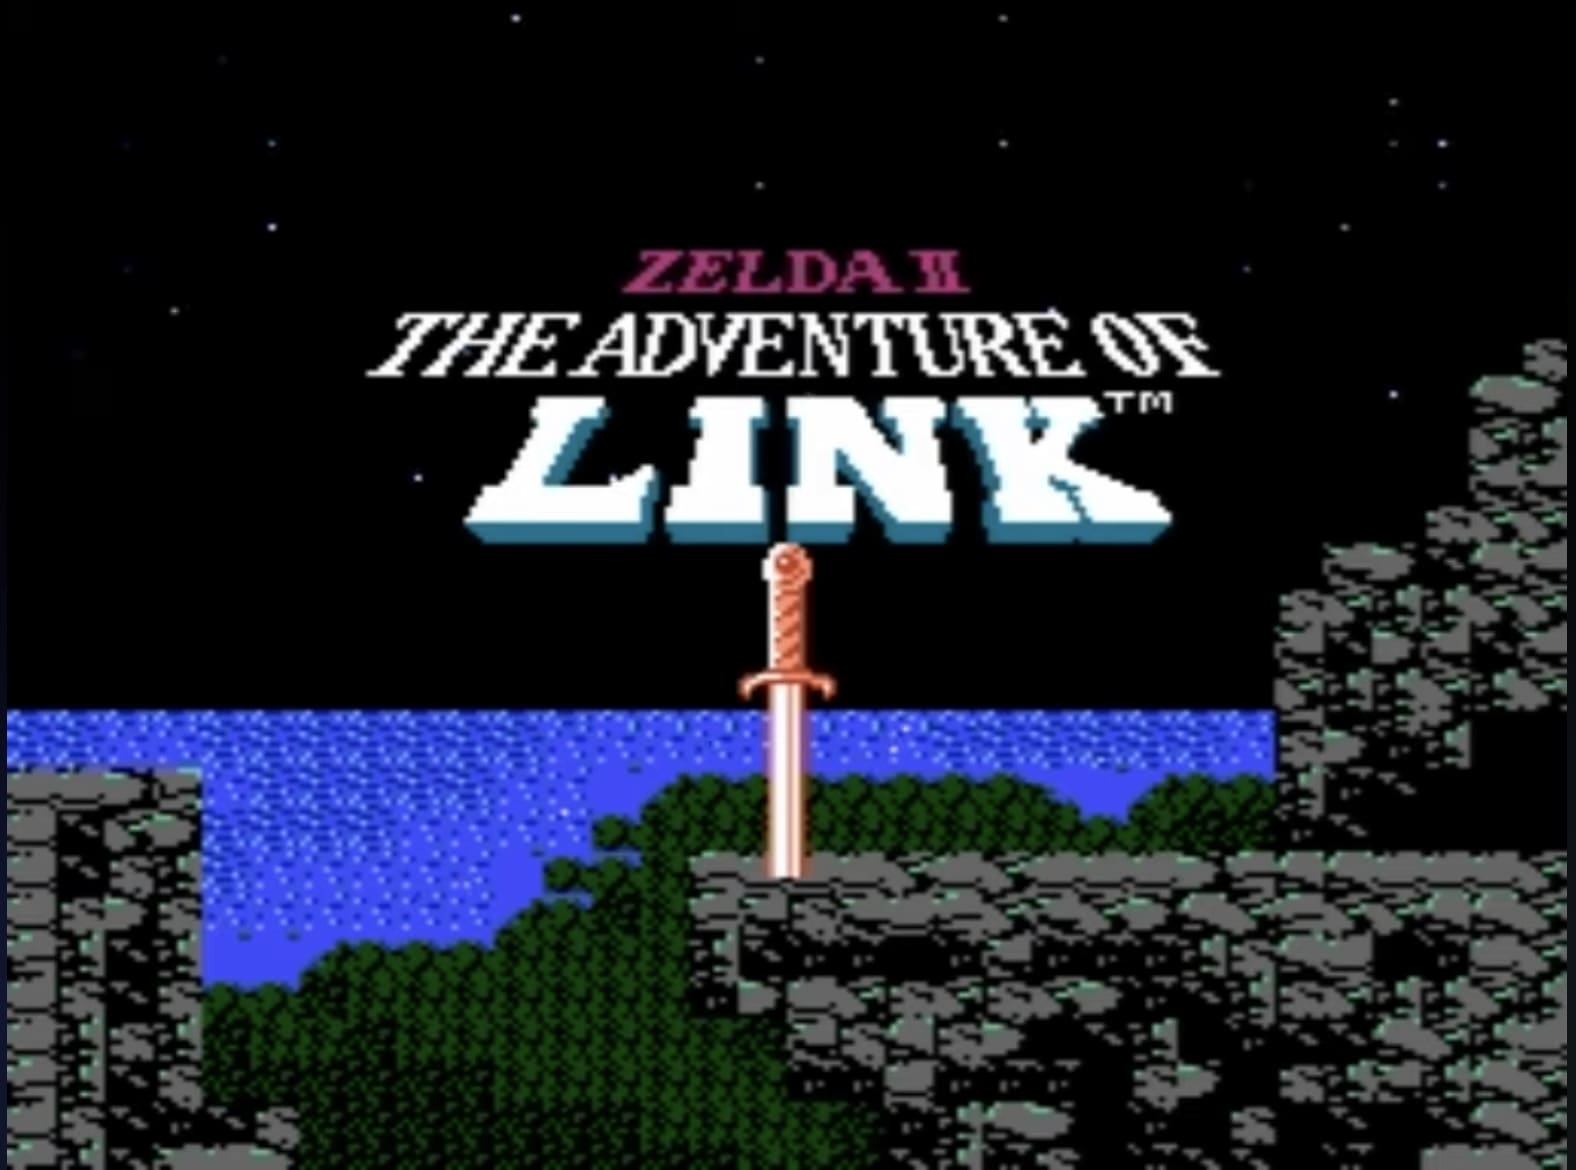 Zelda 2 title screen